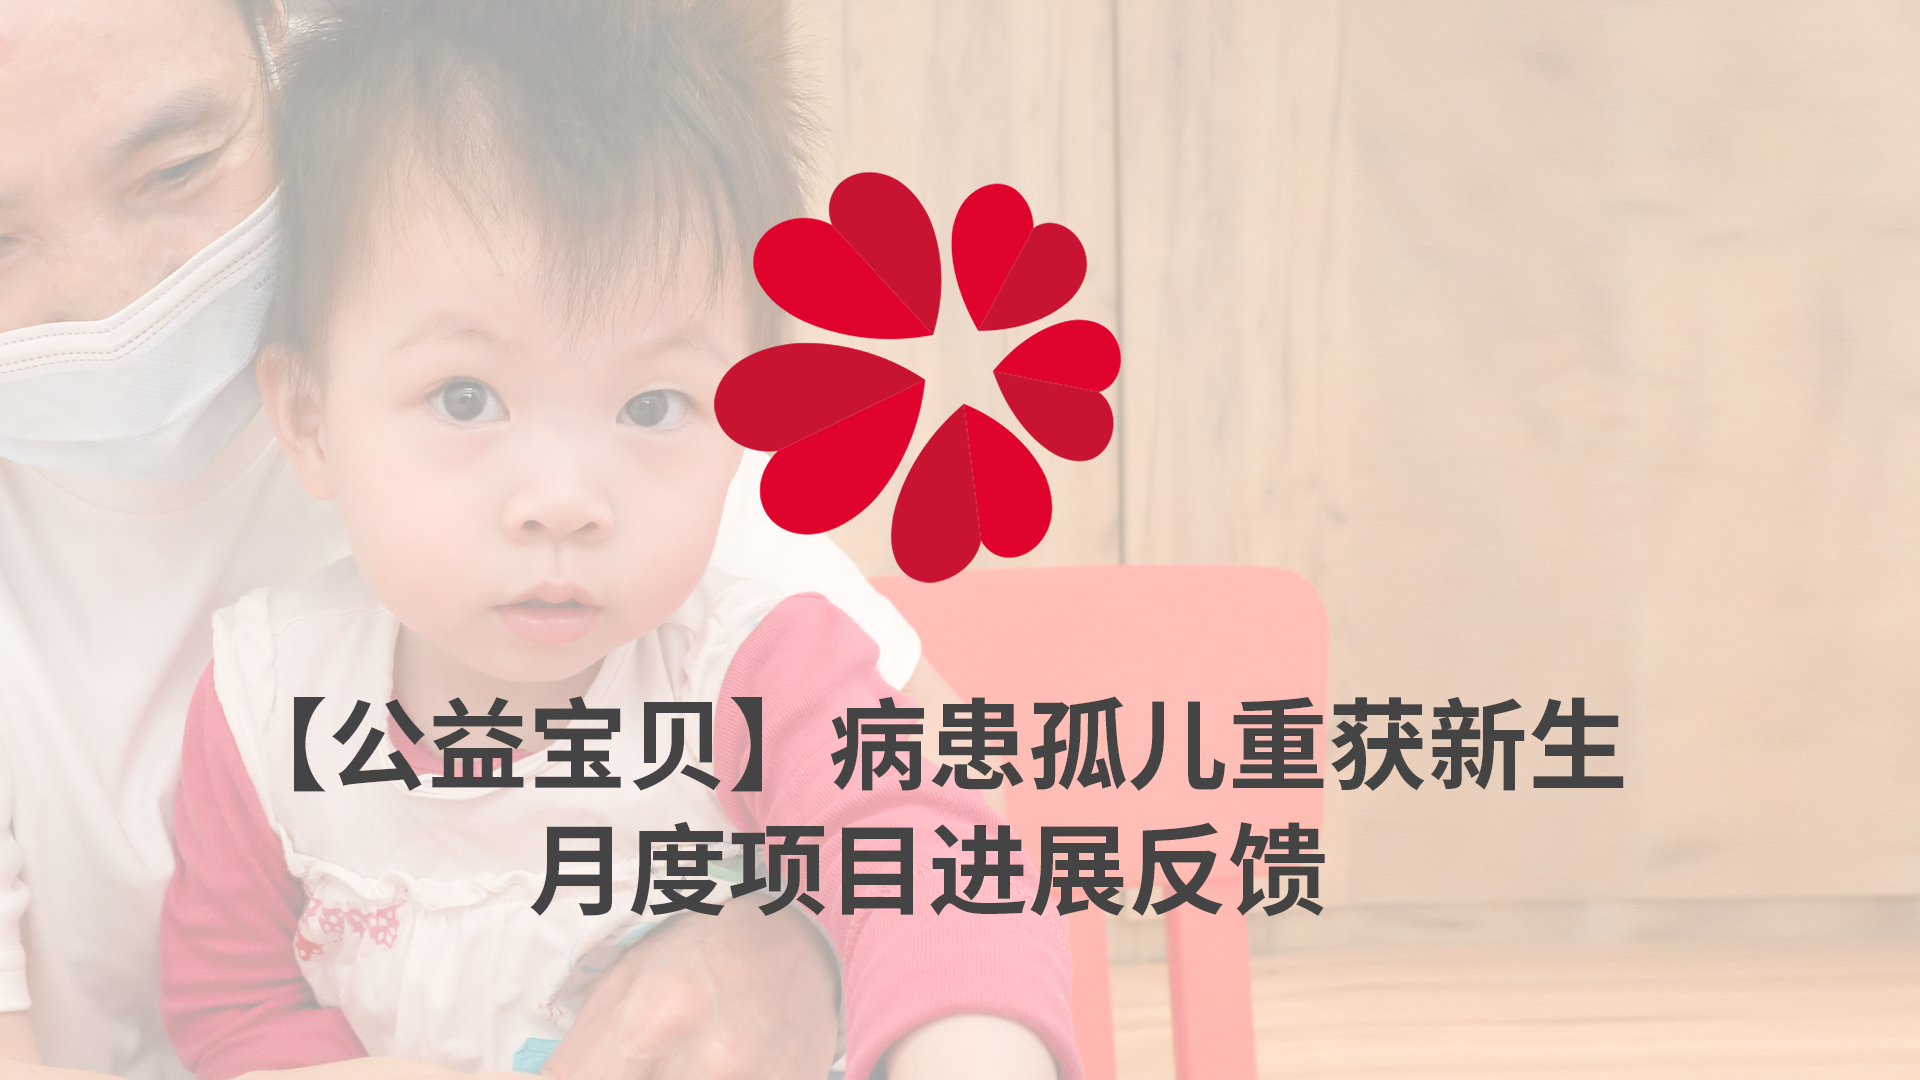 【XIN 益佰项目】病患孤儿重获新生 2023 年 8 月项目进展反馈